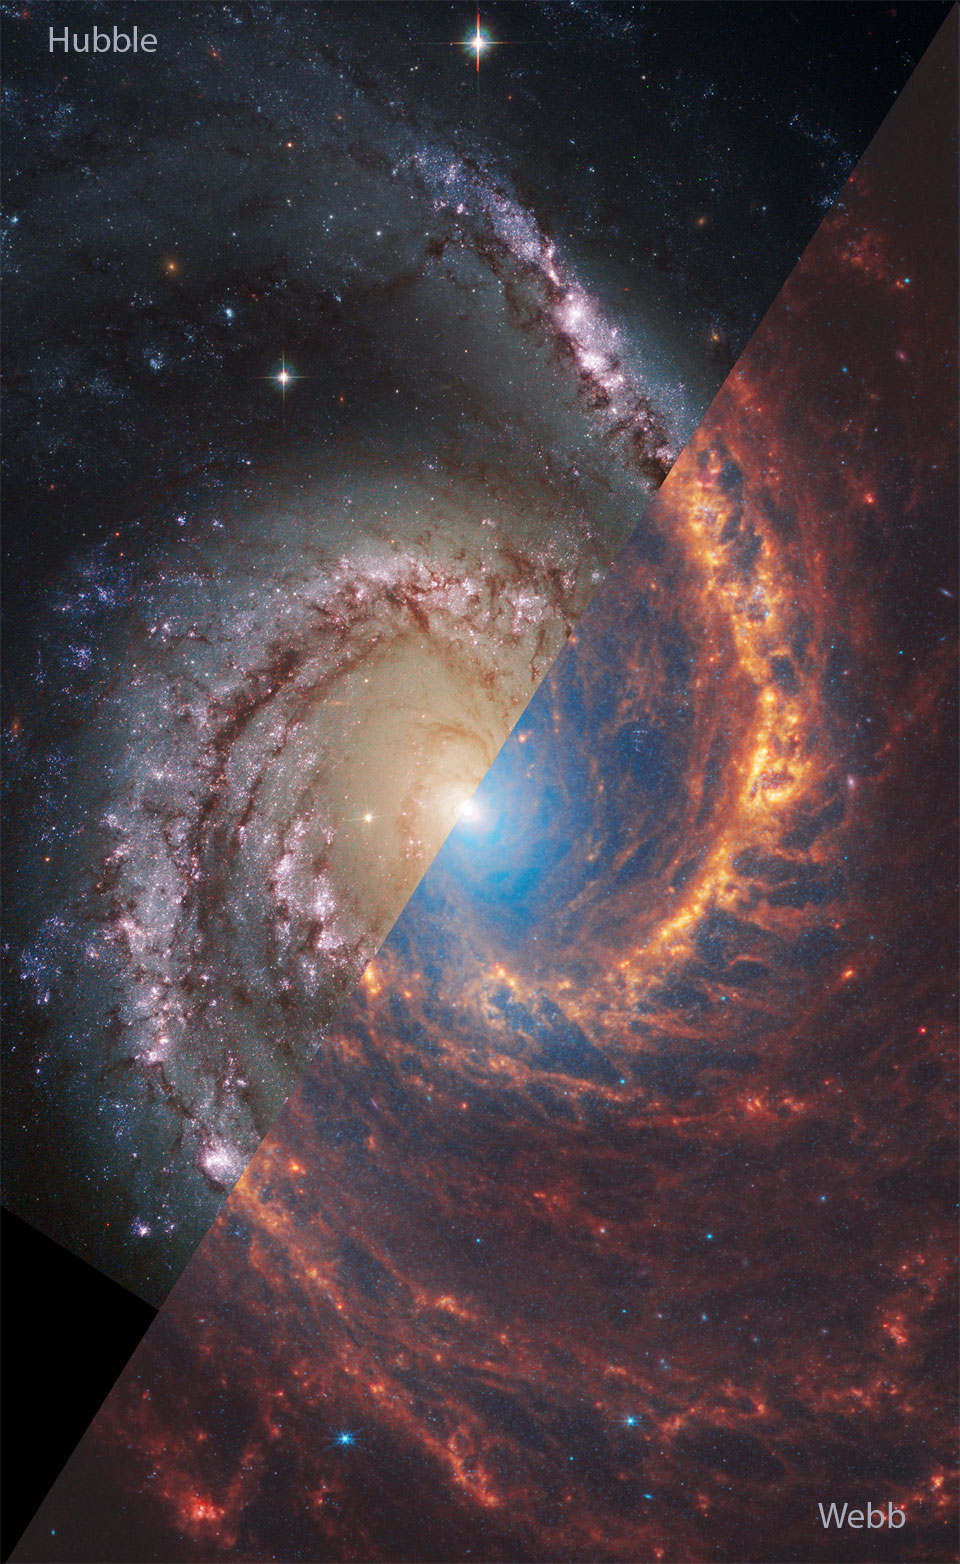 Na zdjęciu widzimy galaktykę spiralną NGC 1566, ukazaną na obrazie z teleskopu Hubble'a (światło widzialne)
u góry, po lewej oraz z teleskopu Webba (podczerwień), u dołu, po prawej. Po najechaniu kursorem na zdjęcie 
pojawią się obrazy z drugiego teleskopu.
Więcej szczegółowych informacji w opisie poniżej.